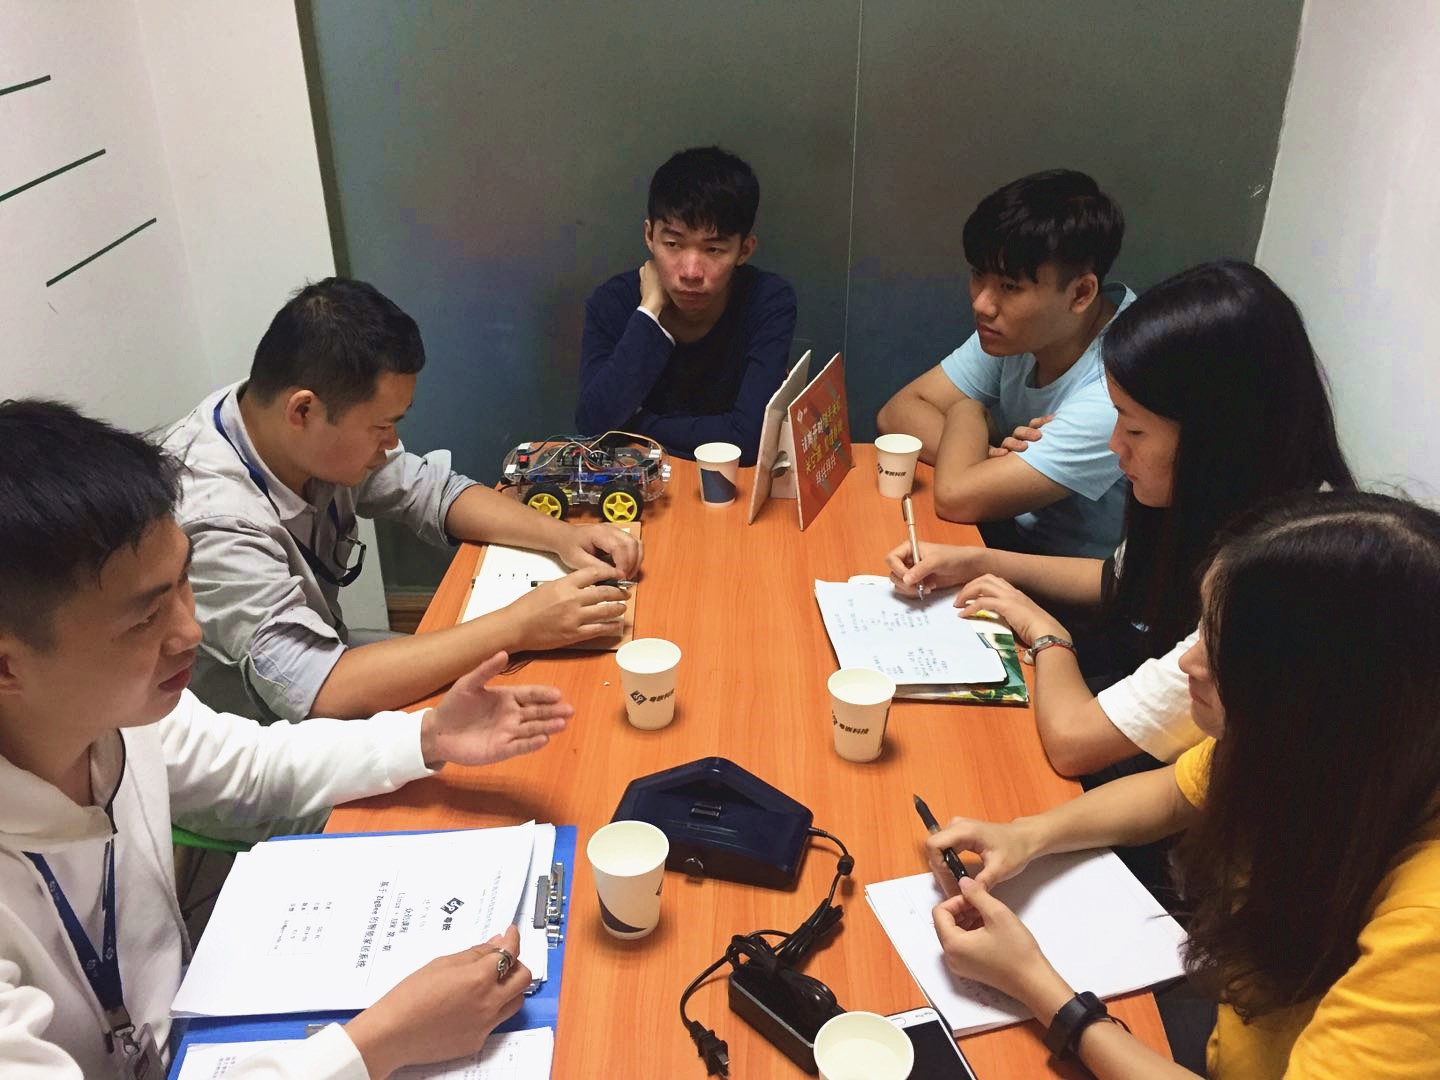 广东工贸职业技术学院众创空间运营团队到访粤嵌开展交流活动